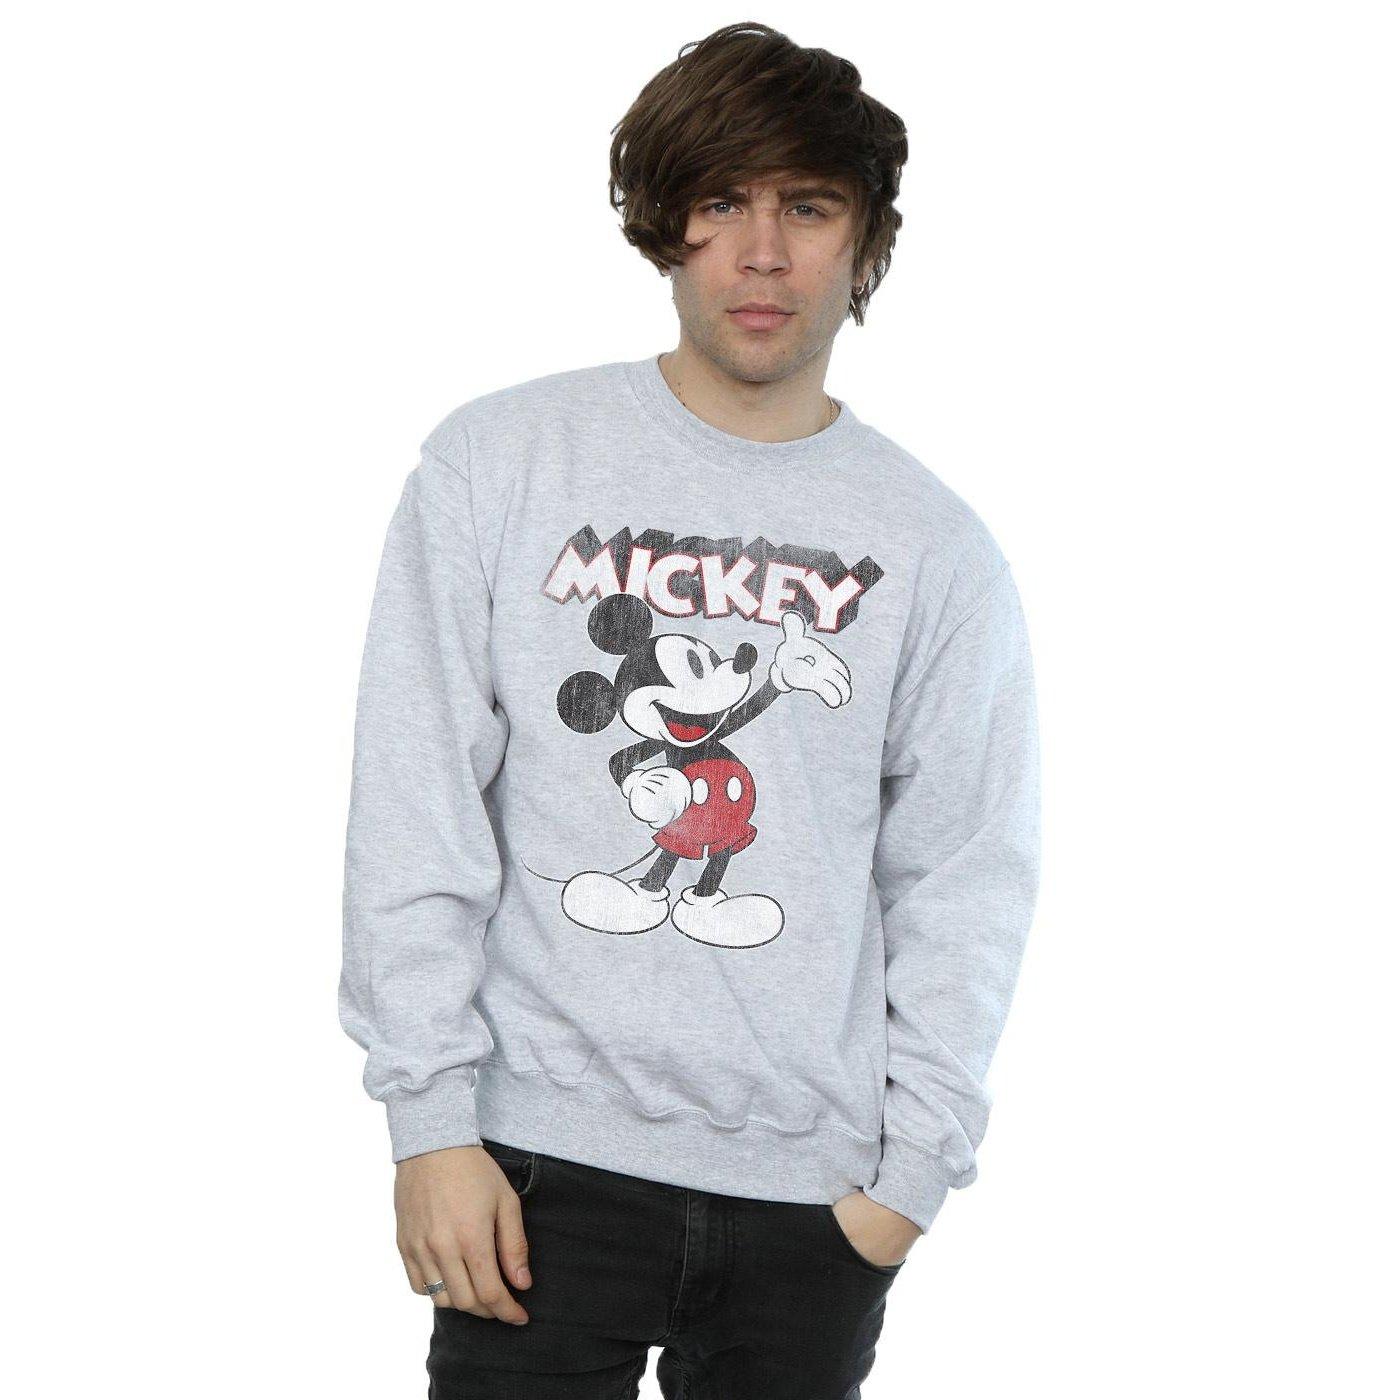 MICKEY MOUSE  Presents Sweatshirt 